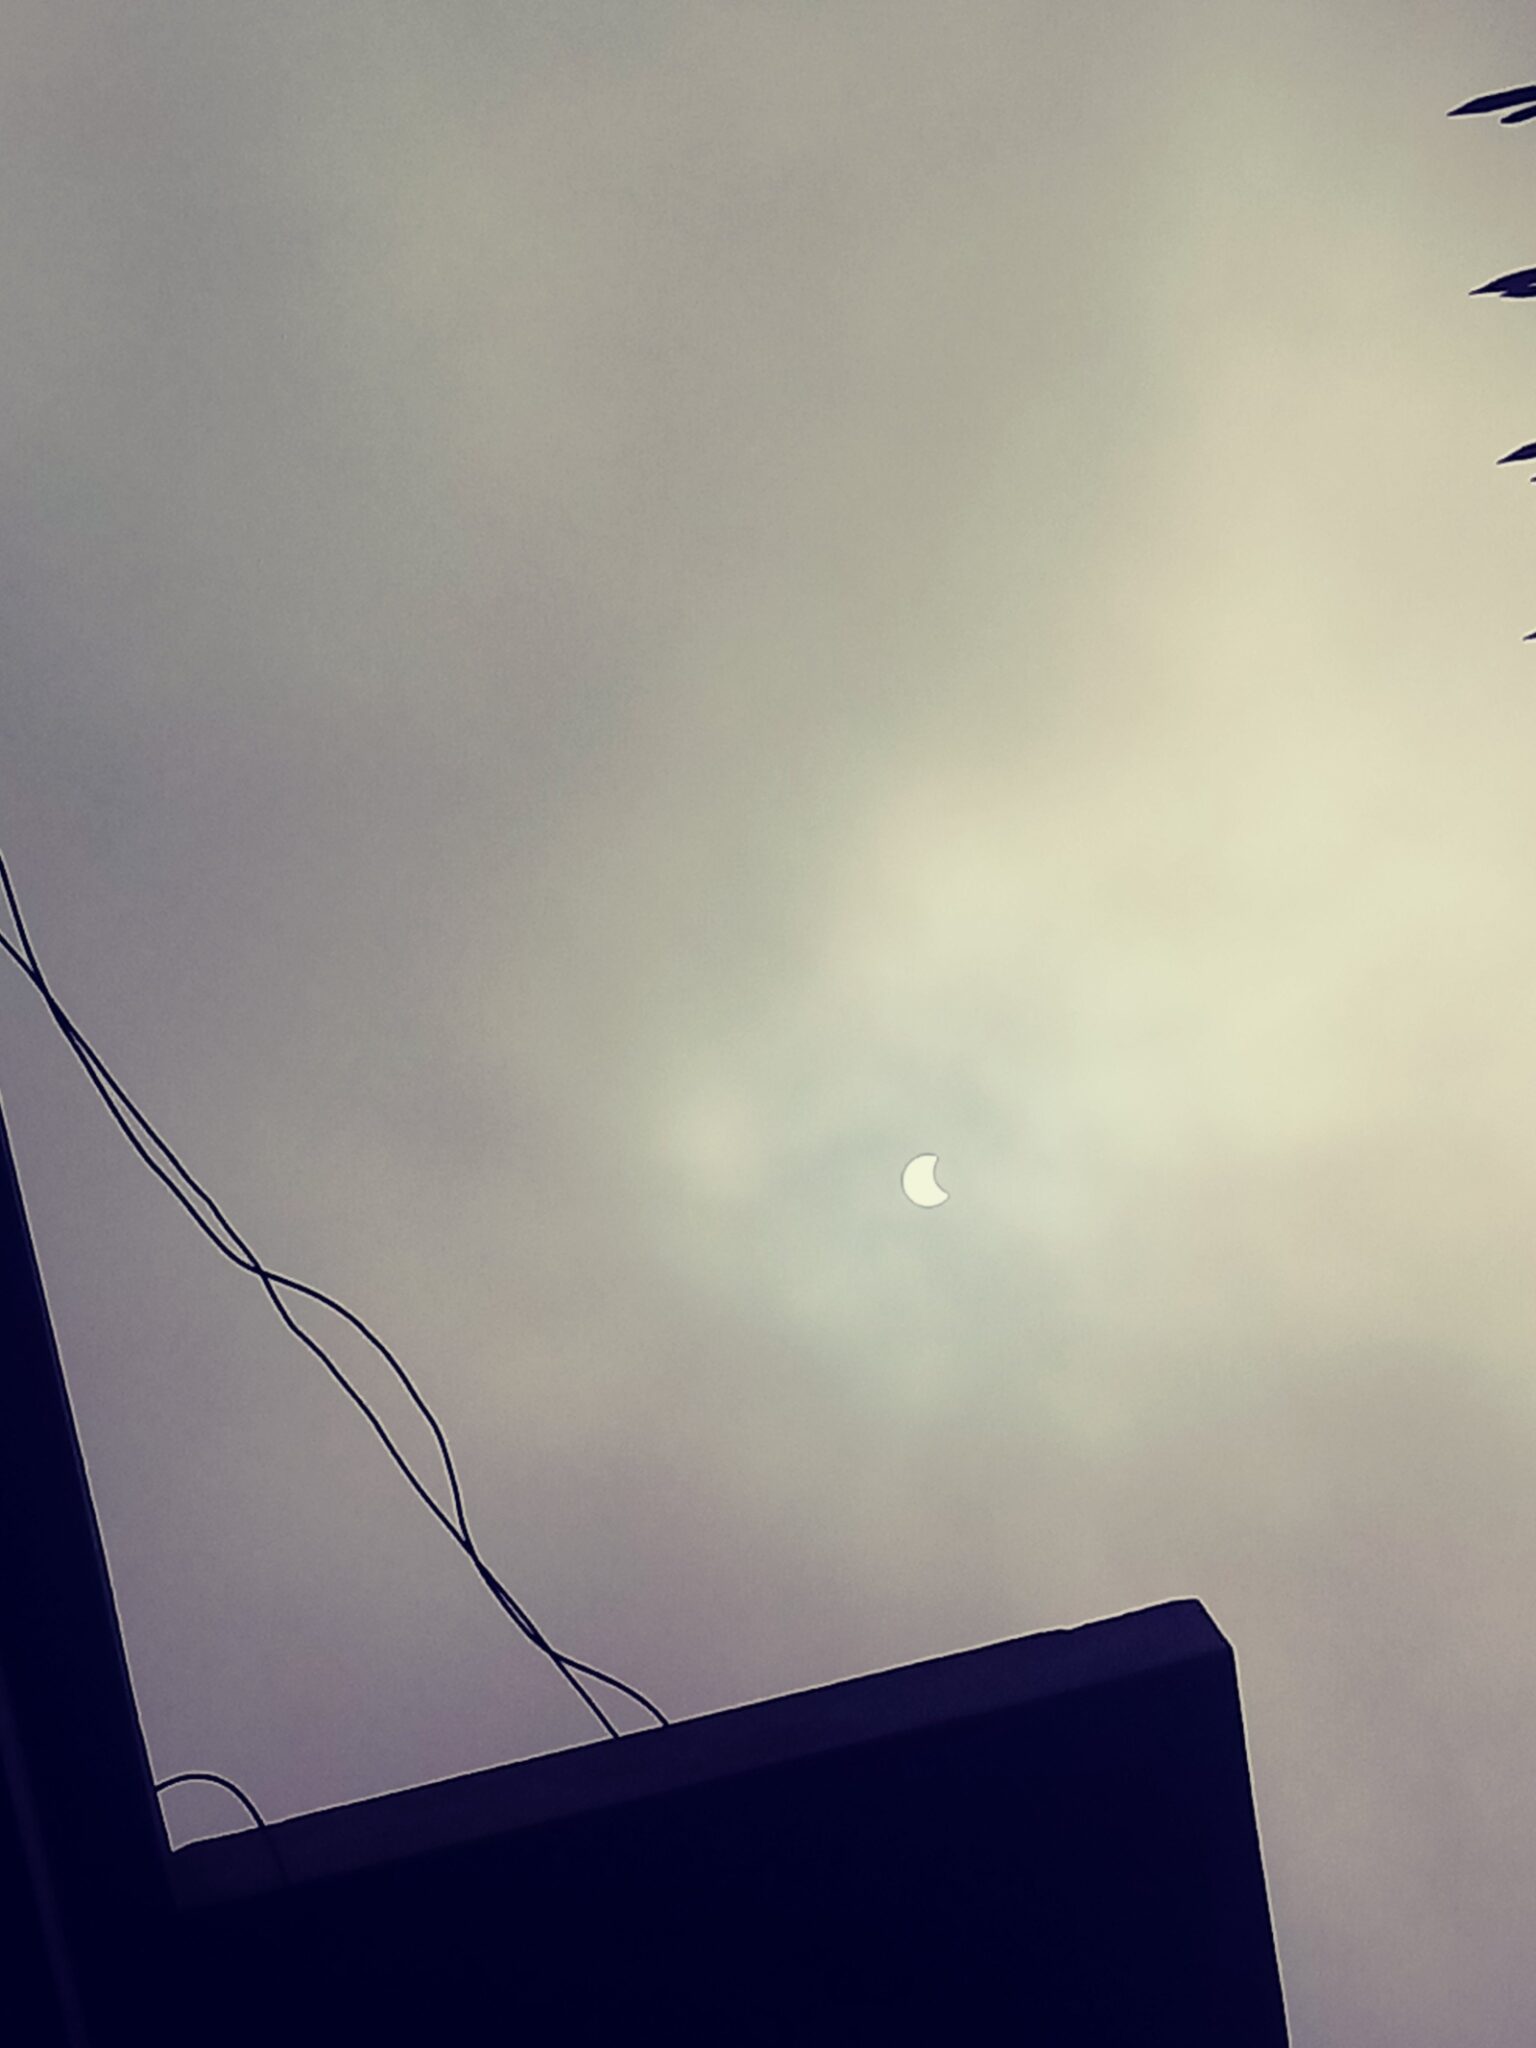 En imágenes: así transcurrió el eclipse solar lunar que pudo verse desde Venezuela y otros países